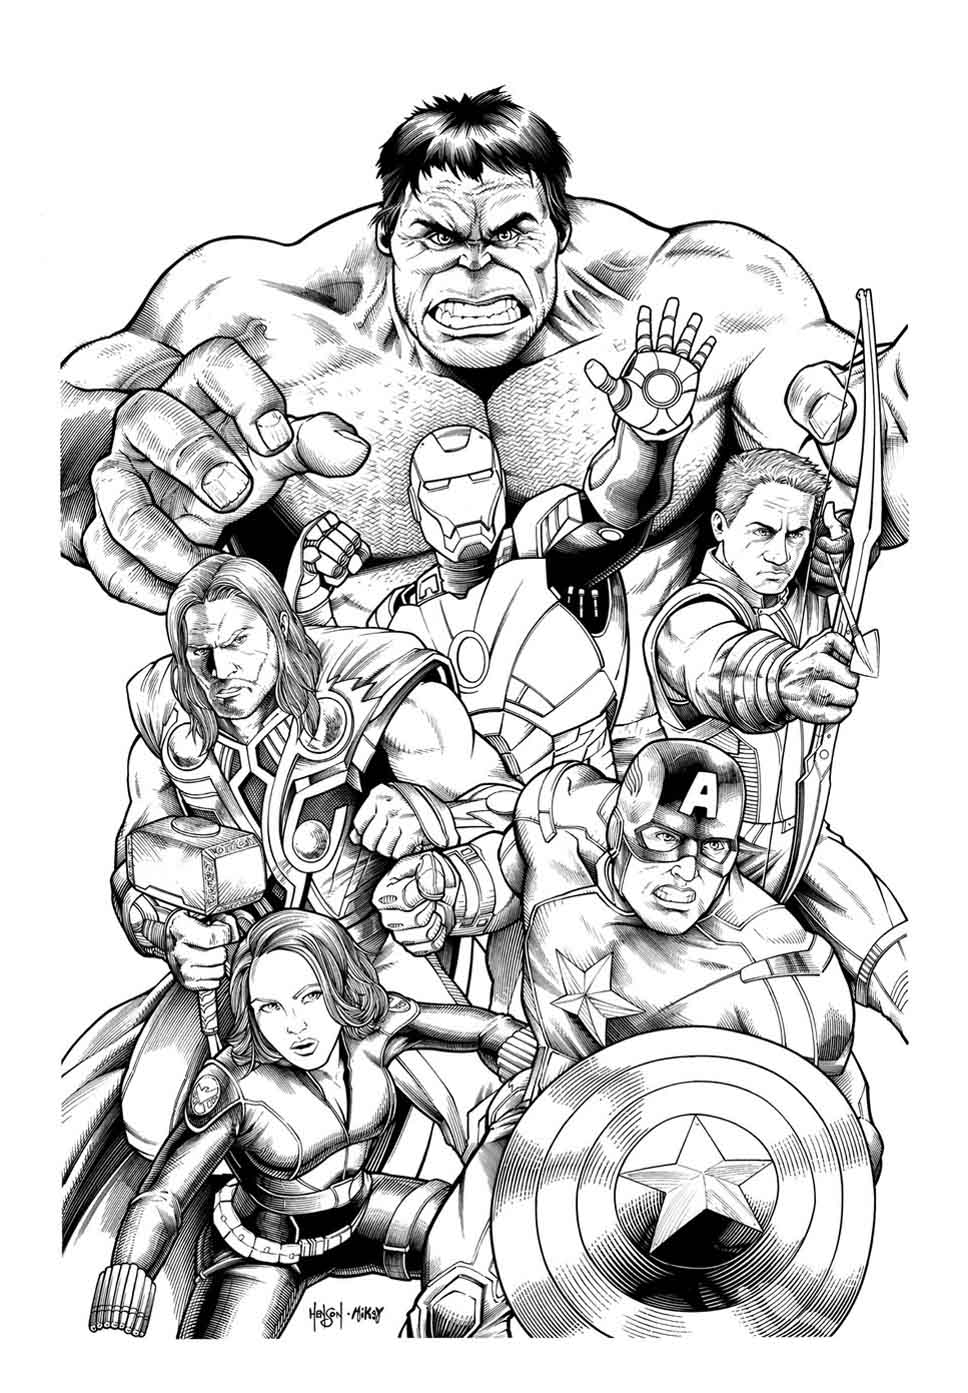 Hulk sovrasta con la sua stazza e la sua forza gli altri potenti eroi